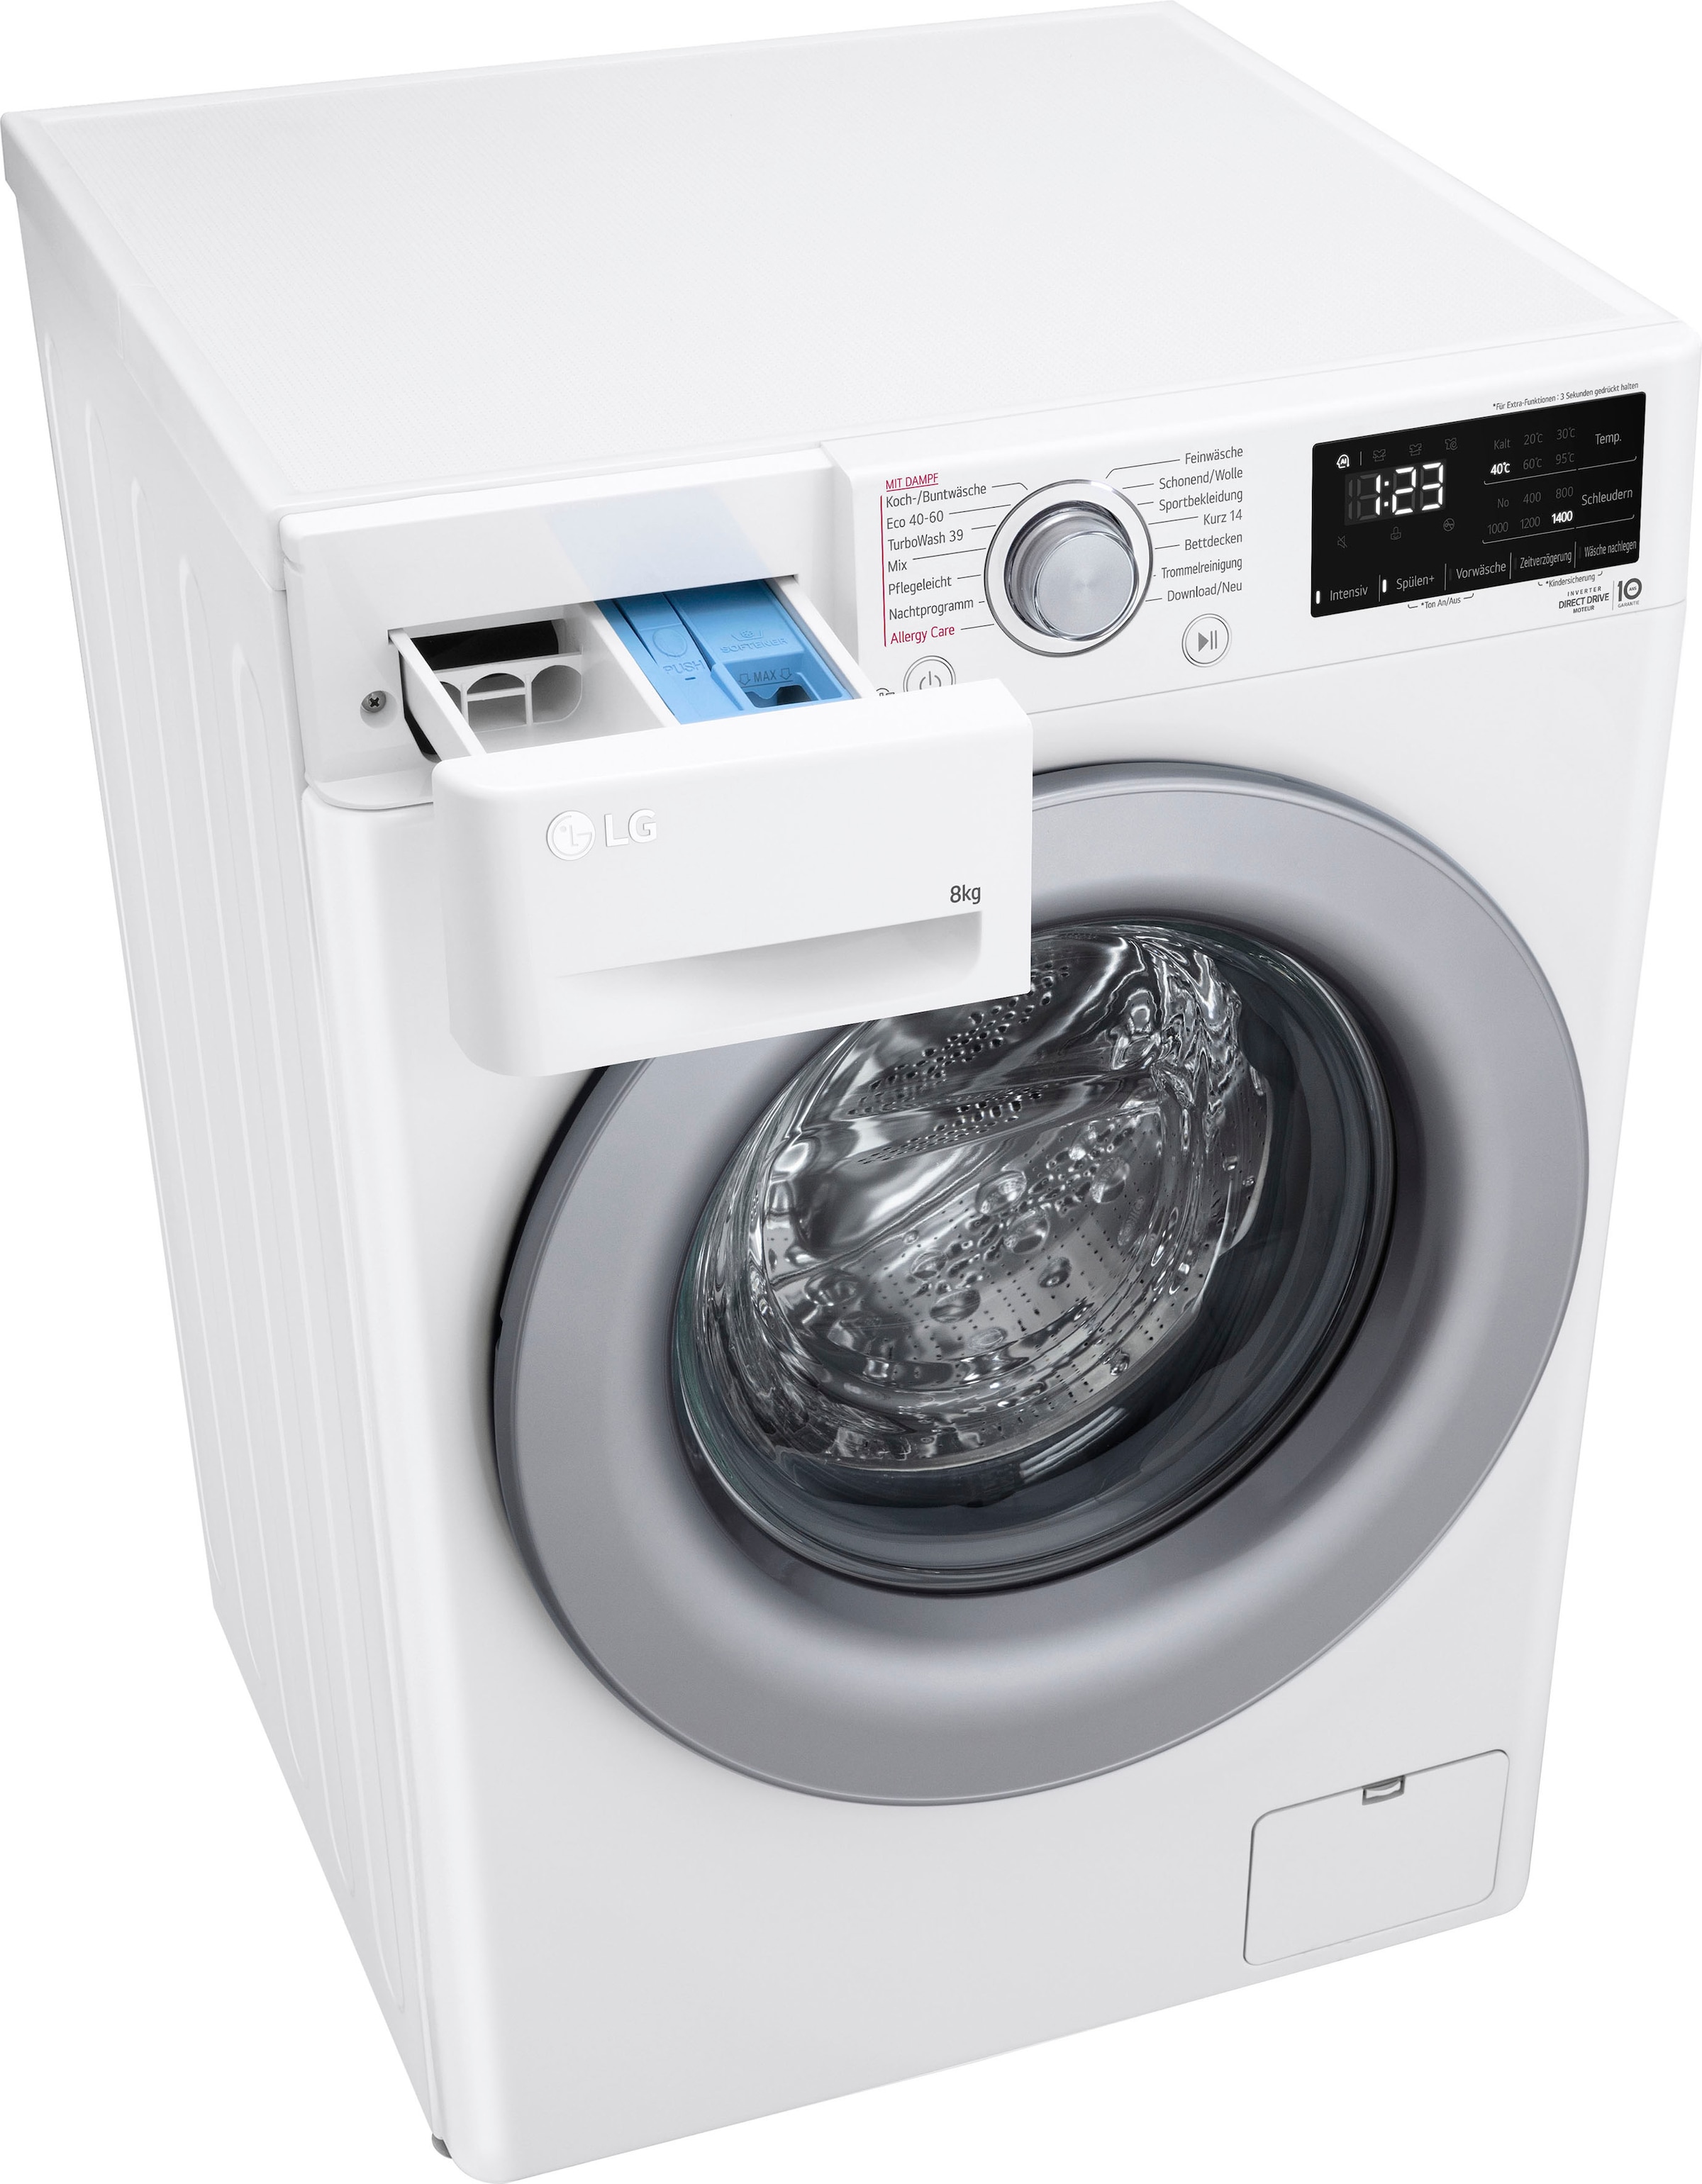 LG Waschmaschine »F4WV3284«, Serie bei kg, F4WV3284, 1400 OTTO 8 bestellen 3, U/min